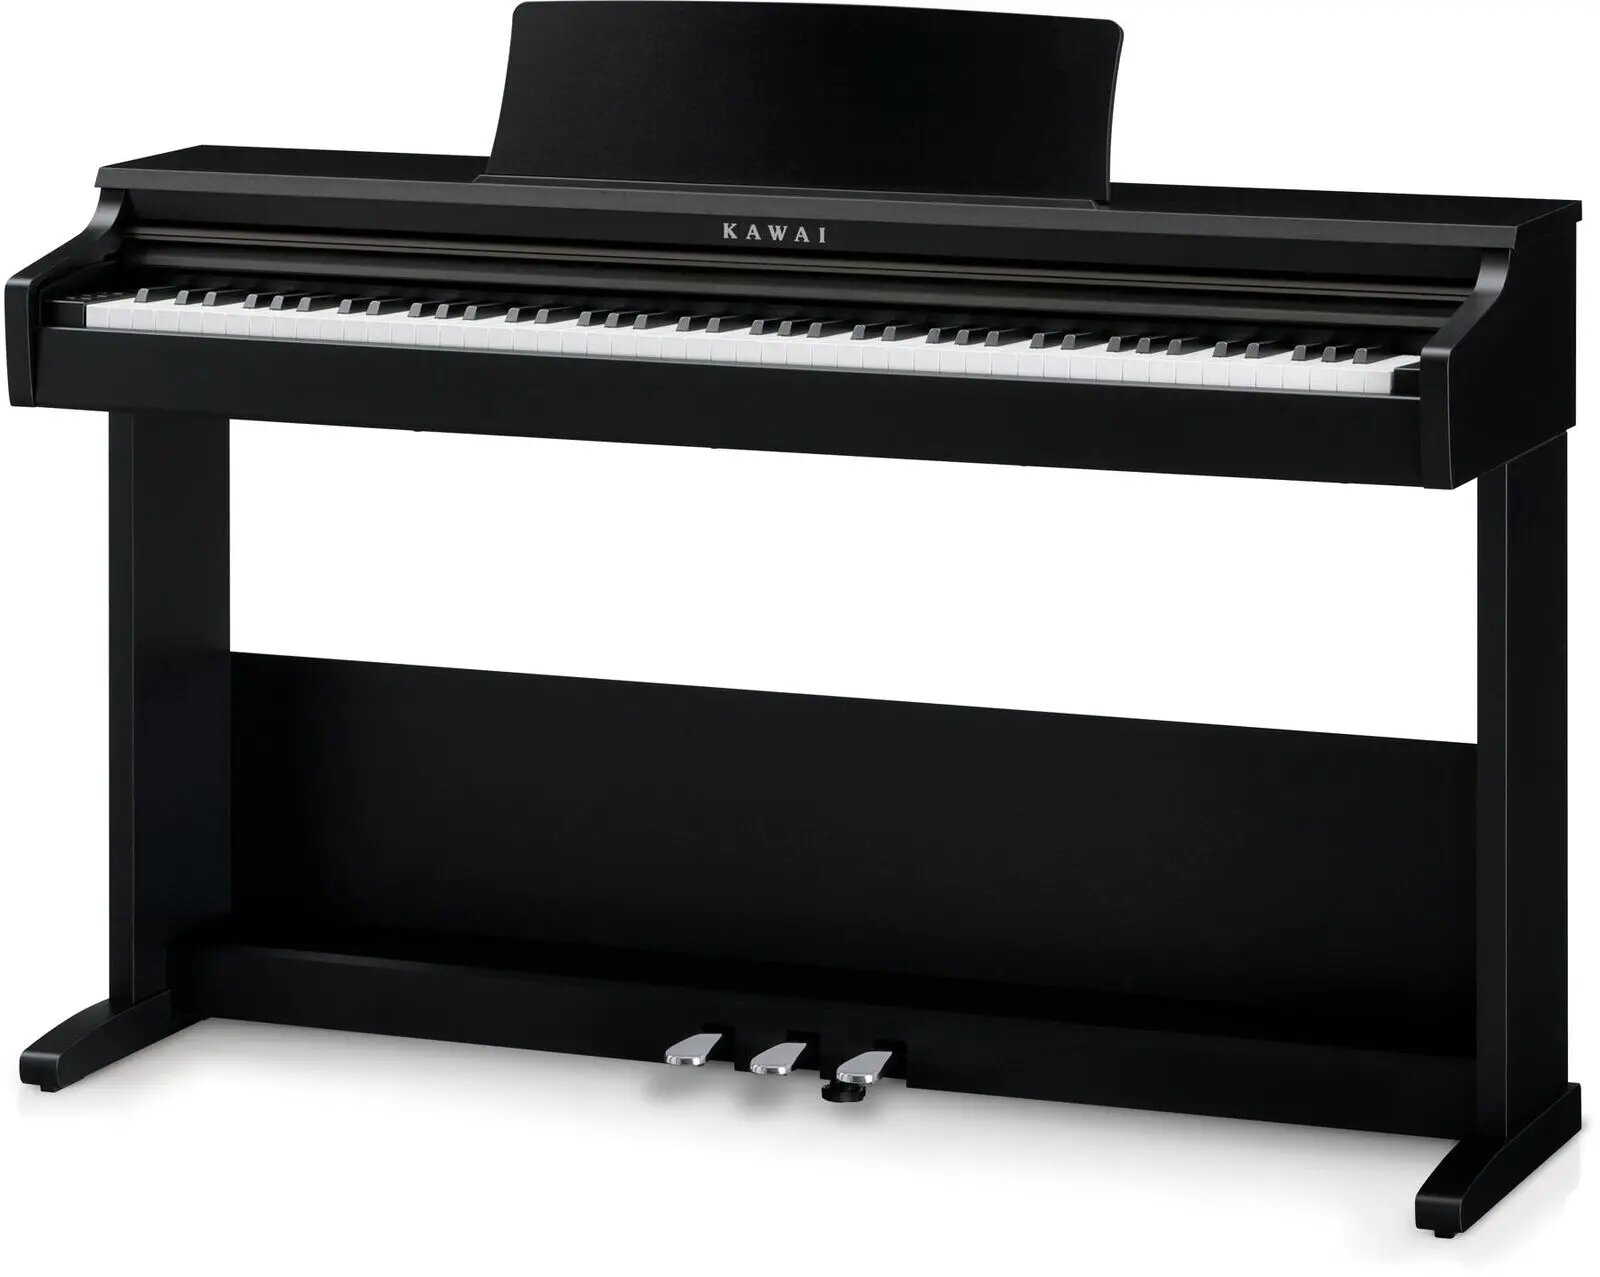 Цифровое пианино Kawai KDP75 Digital Home Piano Embossed Black, Kawai (Каваи)